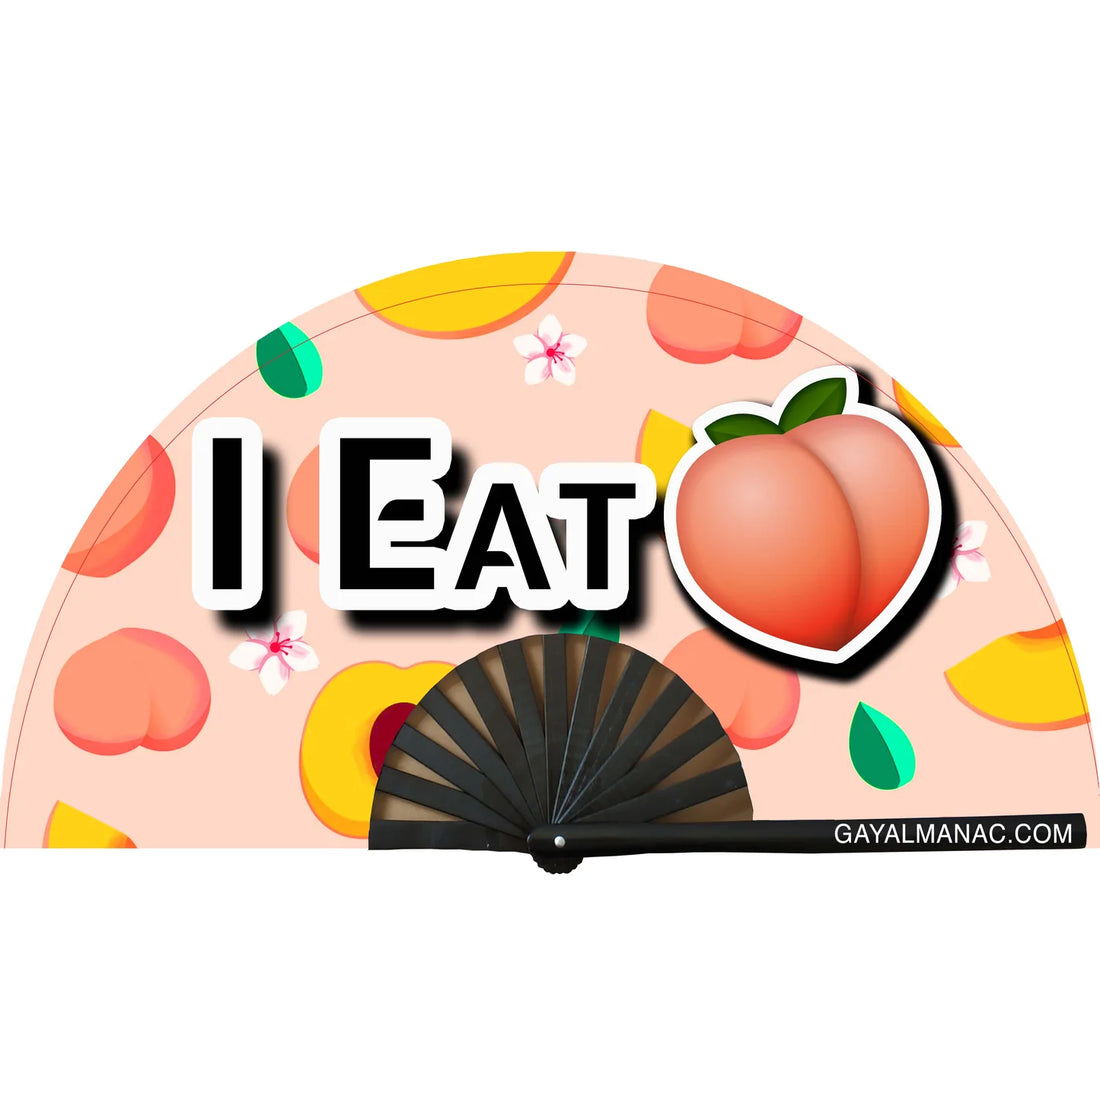 I Eat Peach Hand Fan